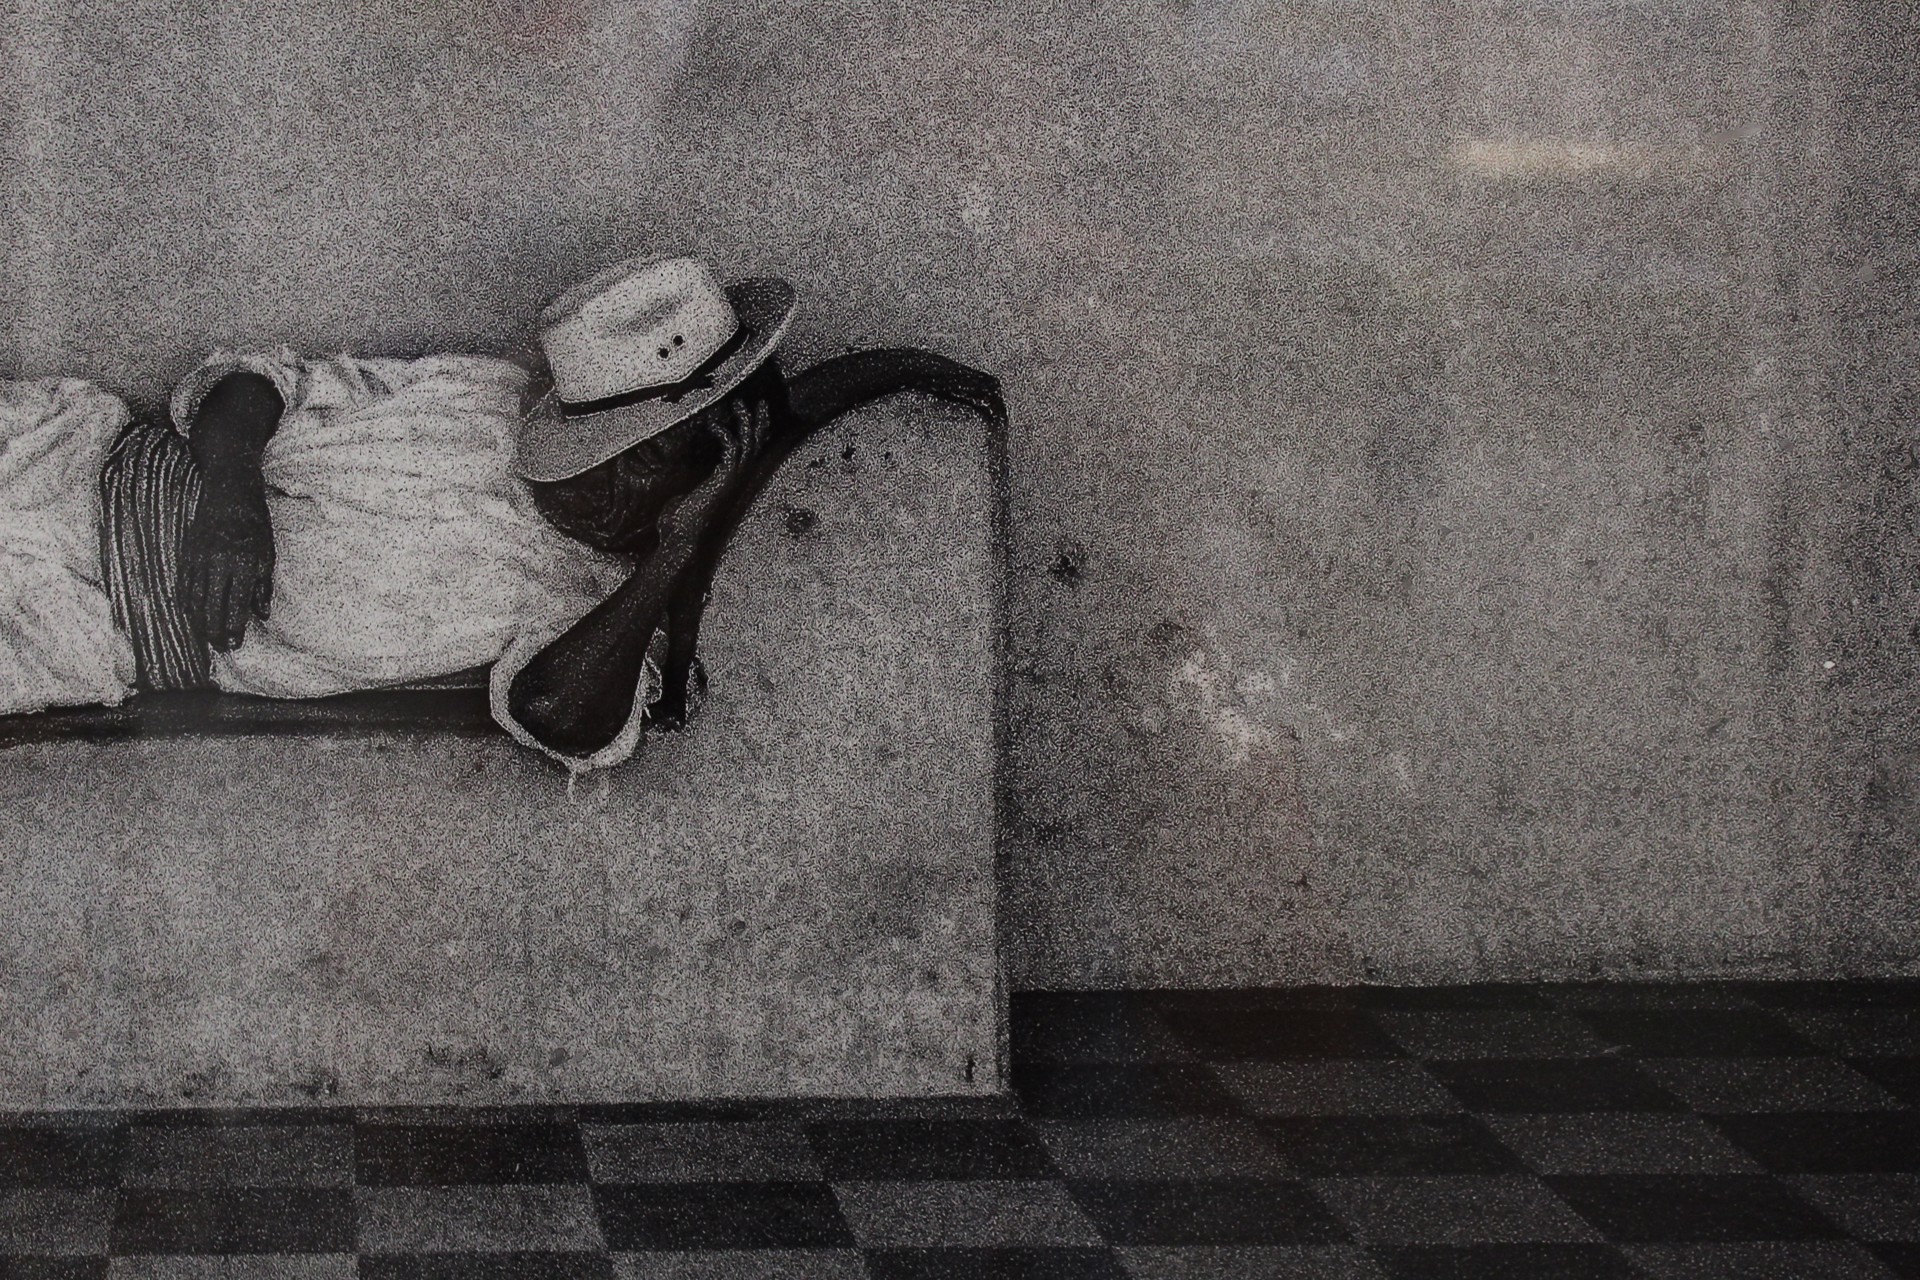 Man Sleeping, Oaxaca by James Hayman